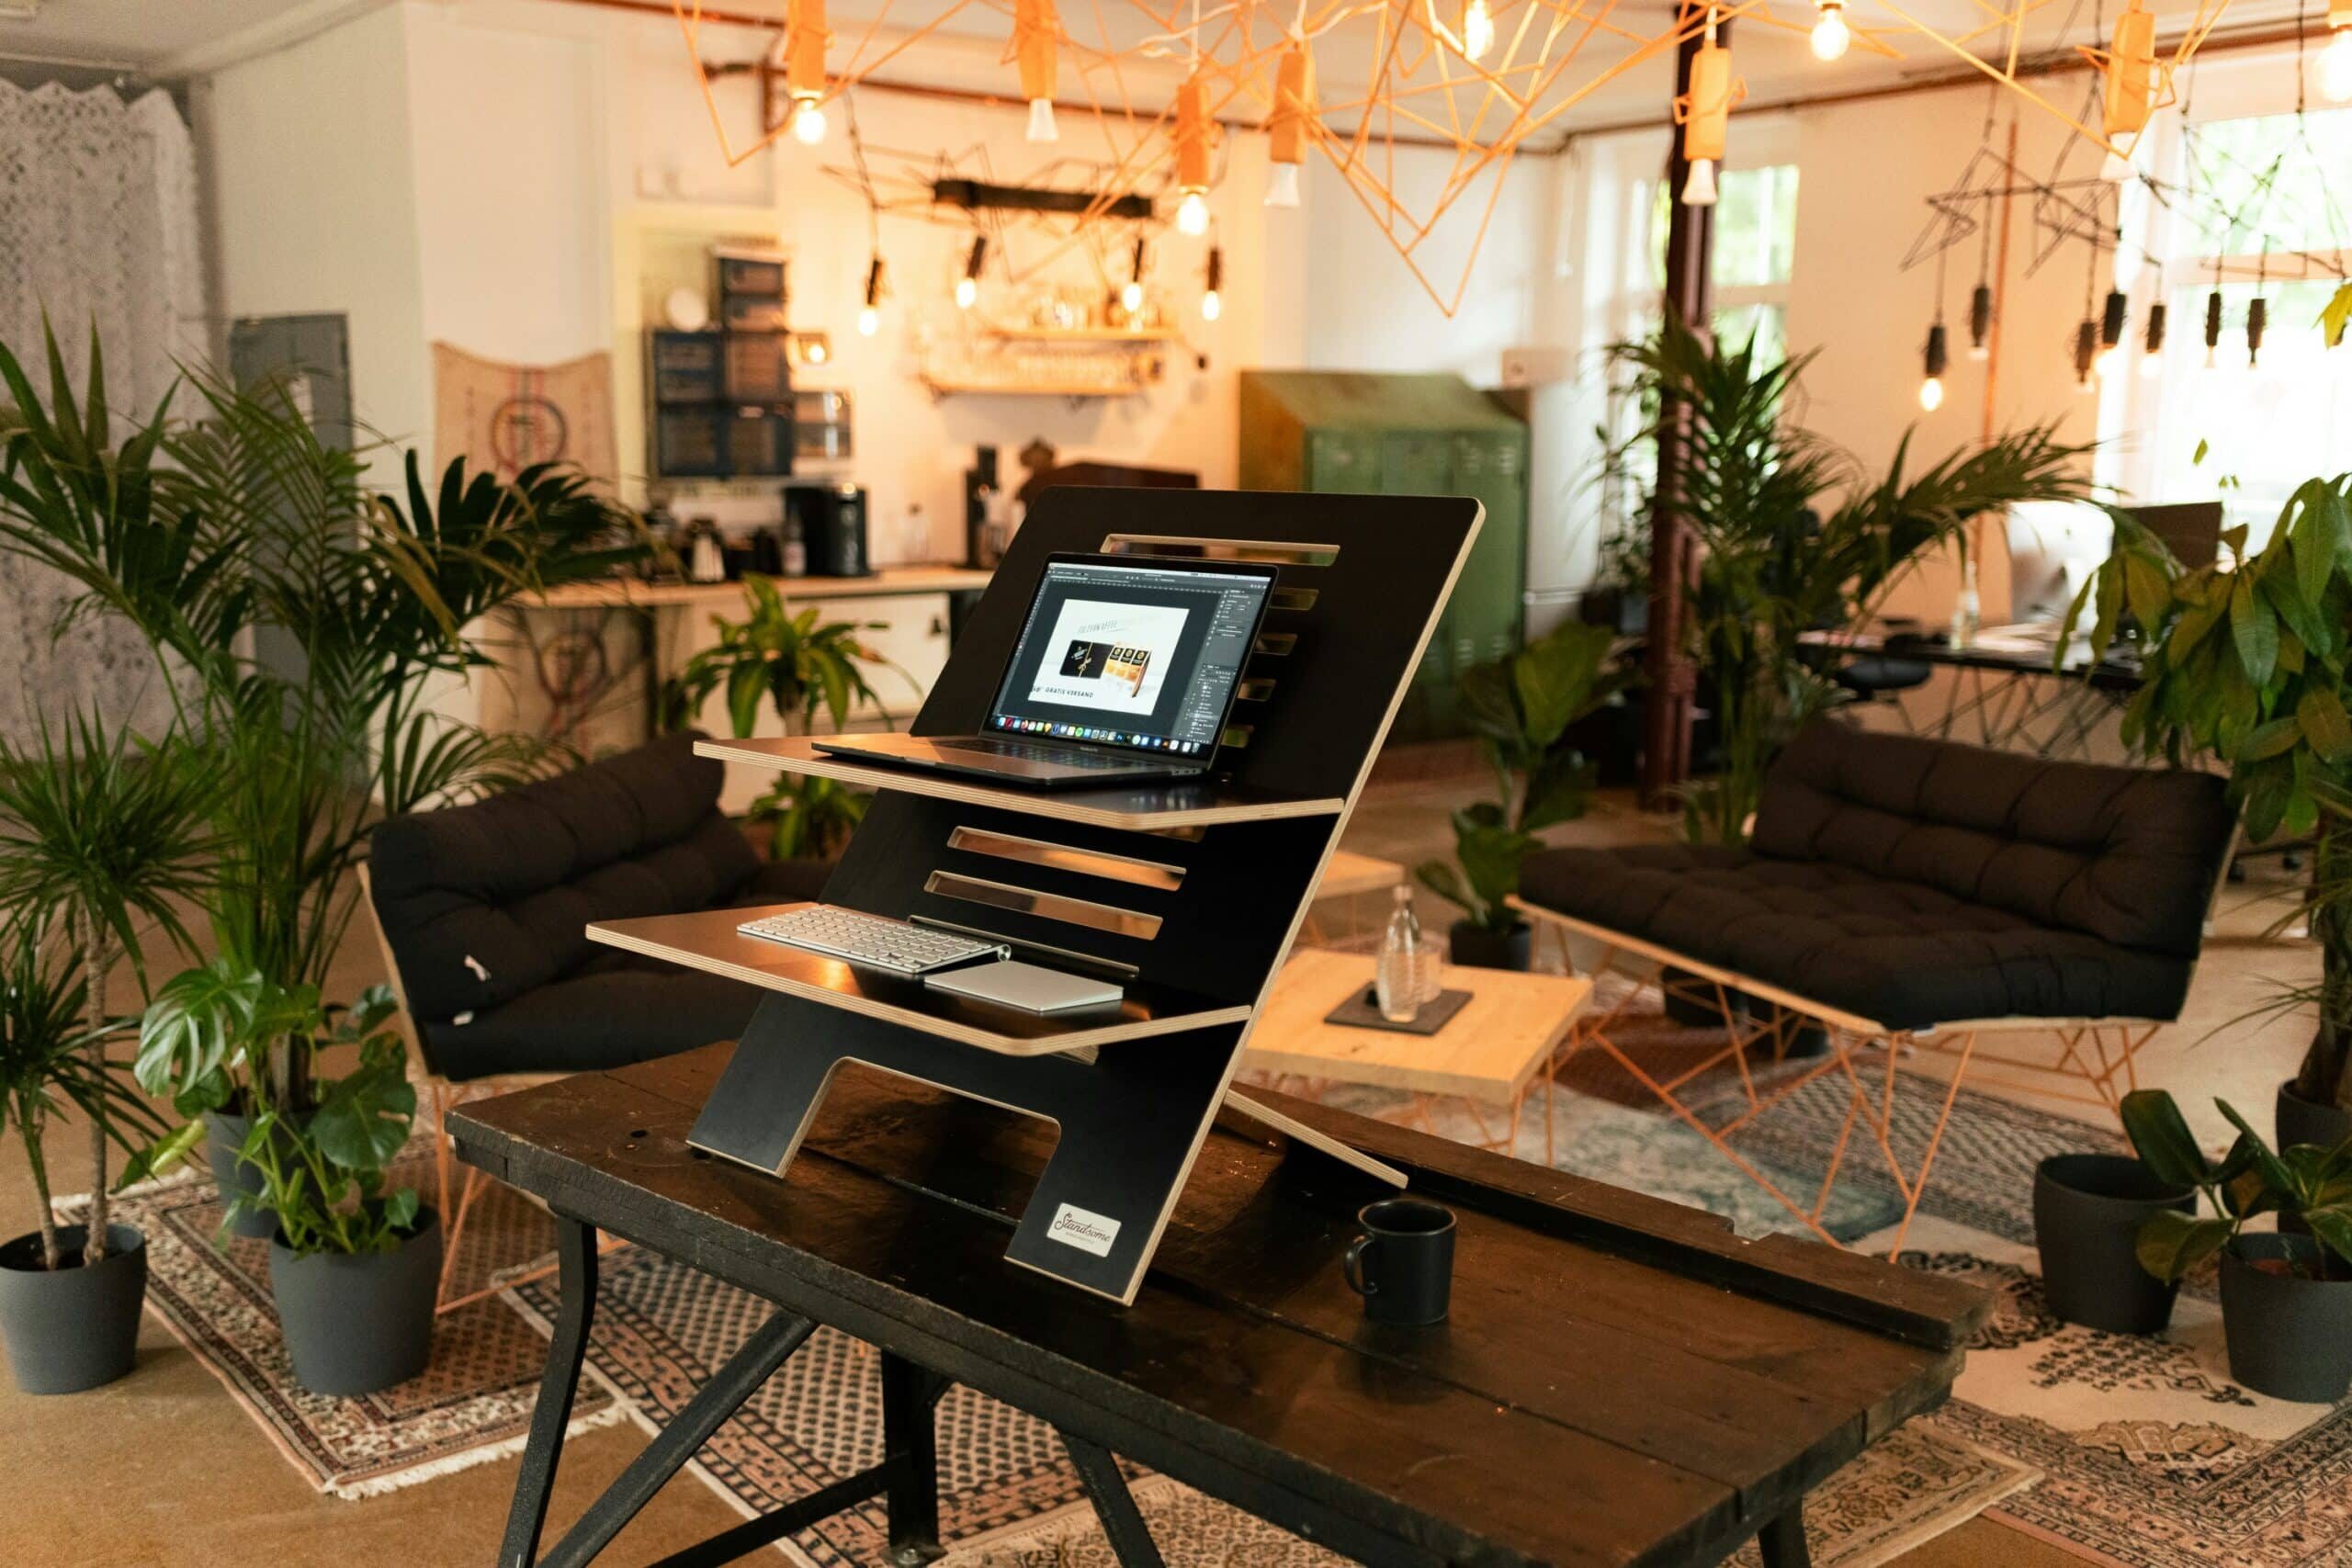 découvrez notre sélection de mobilier de bureau ergonomique pour un espace de travail confortable et productif.